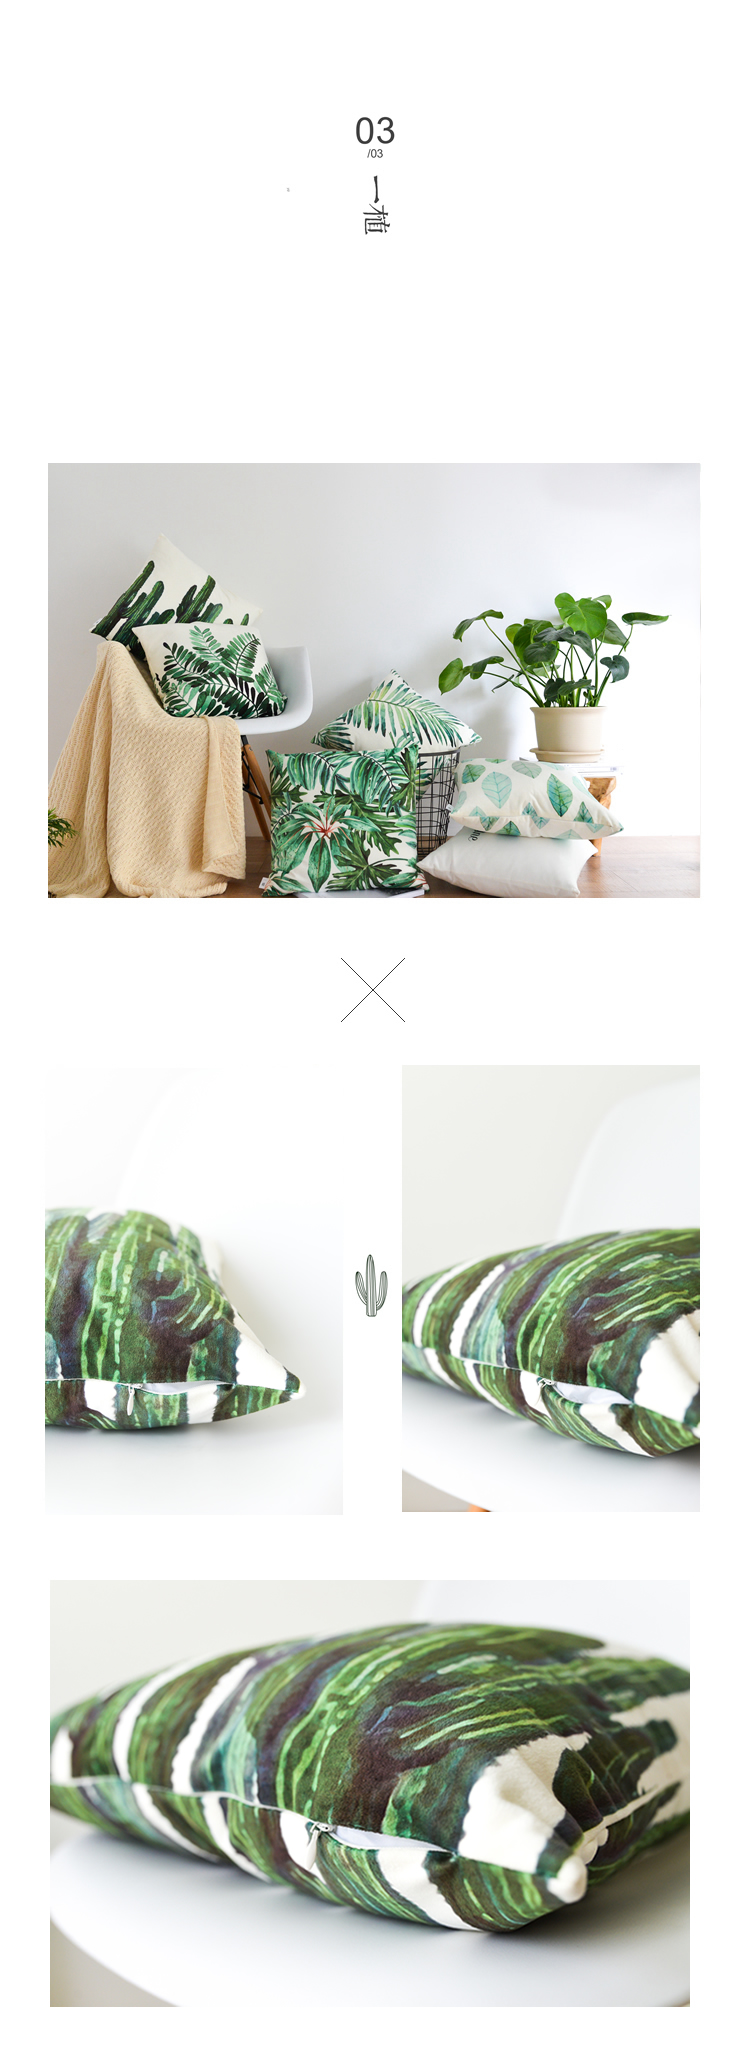 Tôi sống để giới thiệu nhà của tôi có một vườn thực vật đệm màu xanh lá cây đệm sofa gối xương rồng thiết kế ban đầu